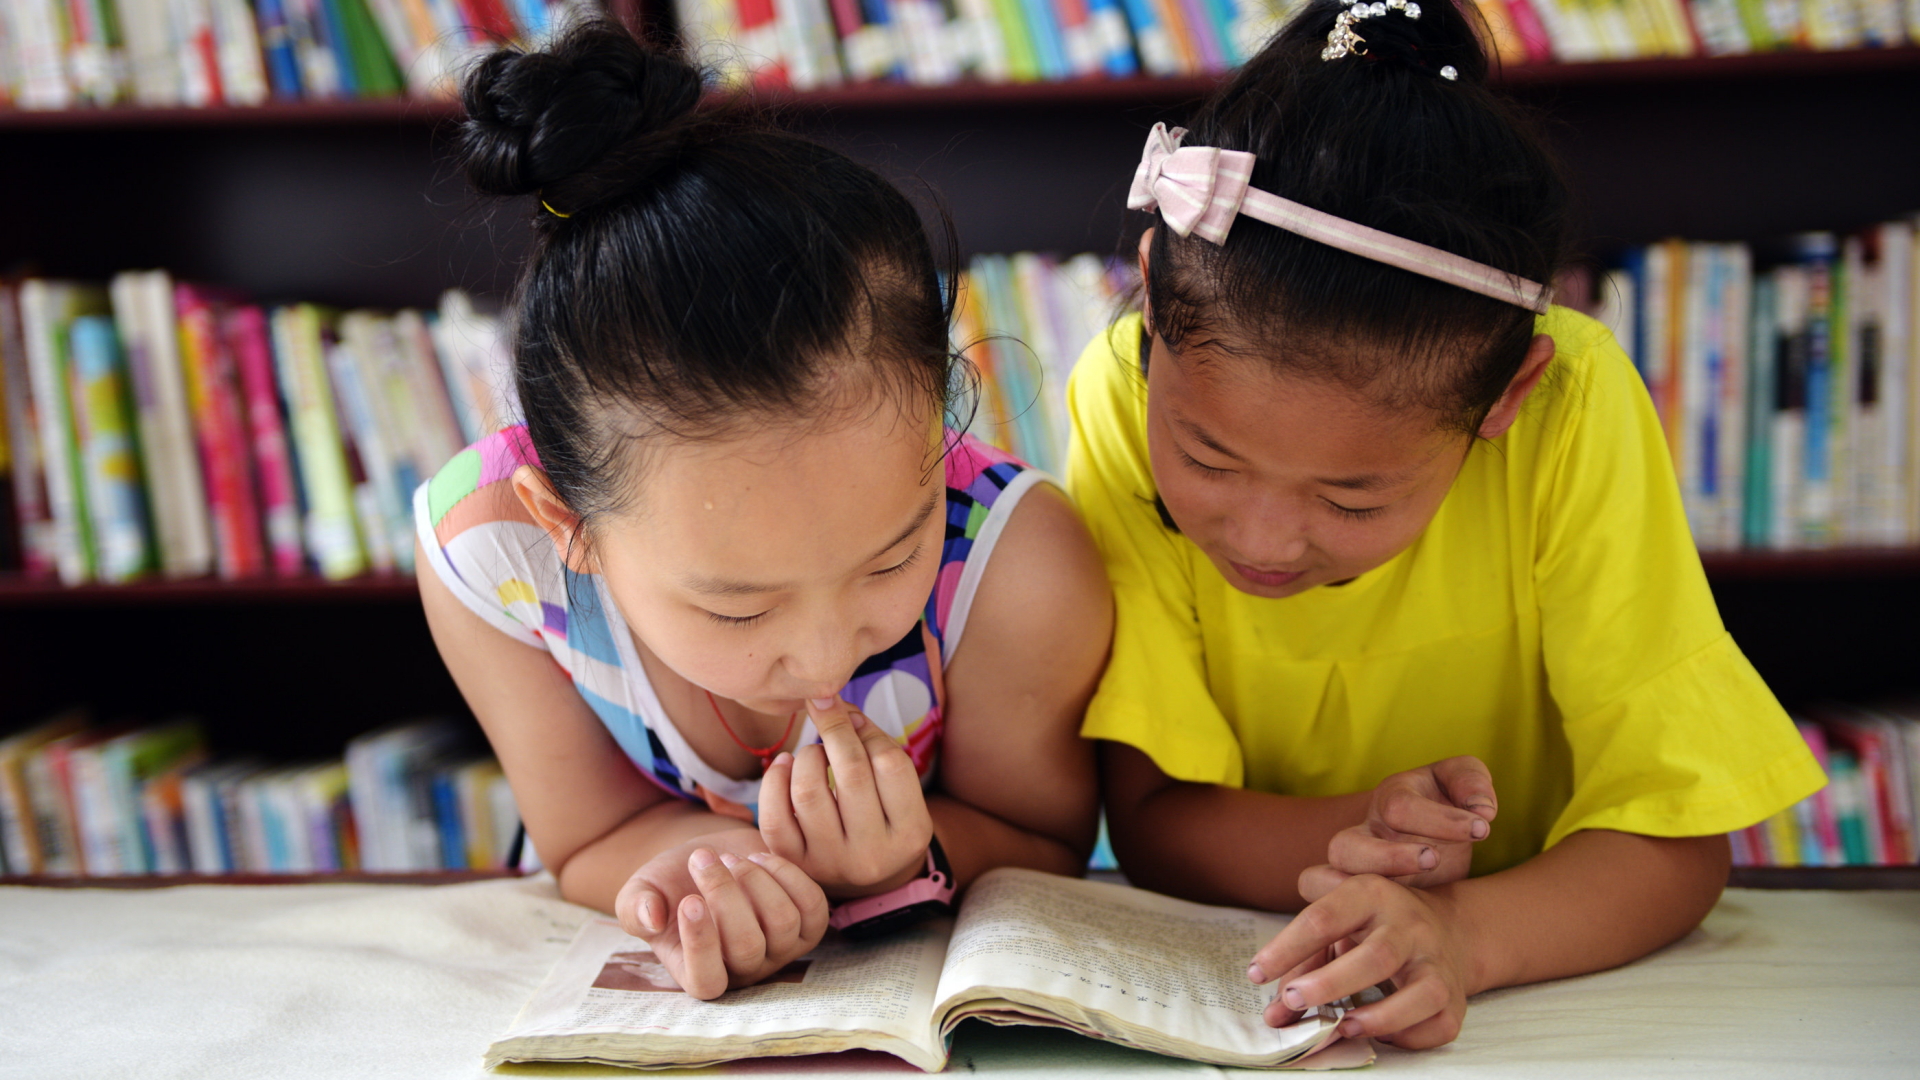 Zwei chinesische Mädchen beugen sich in einer Bibliothek über ein aufgeschlagenes Buch.